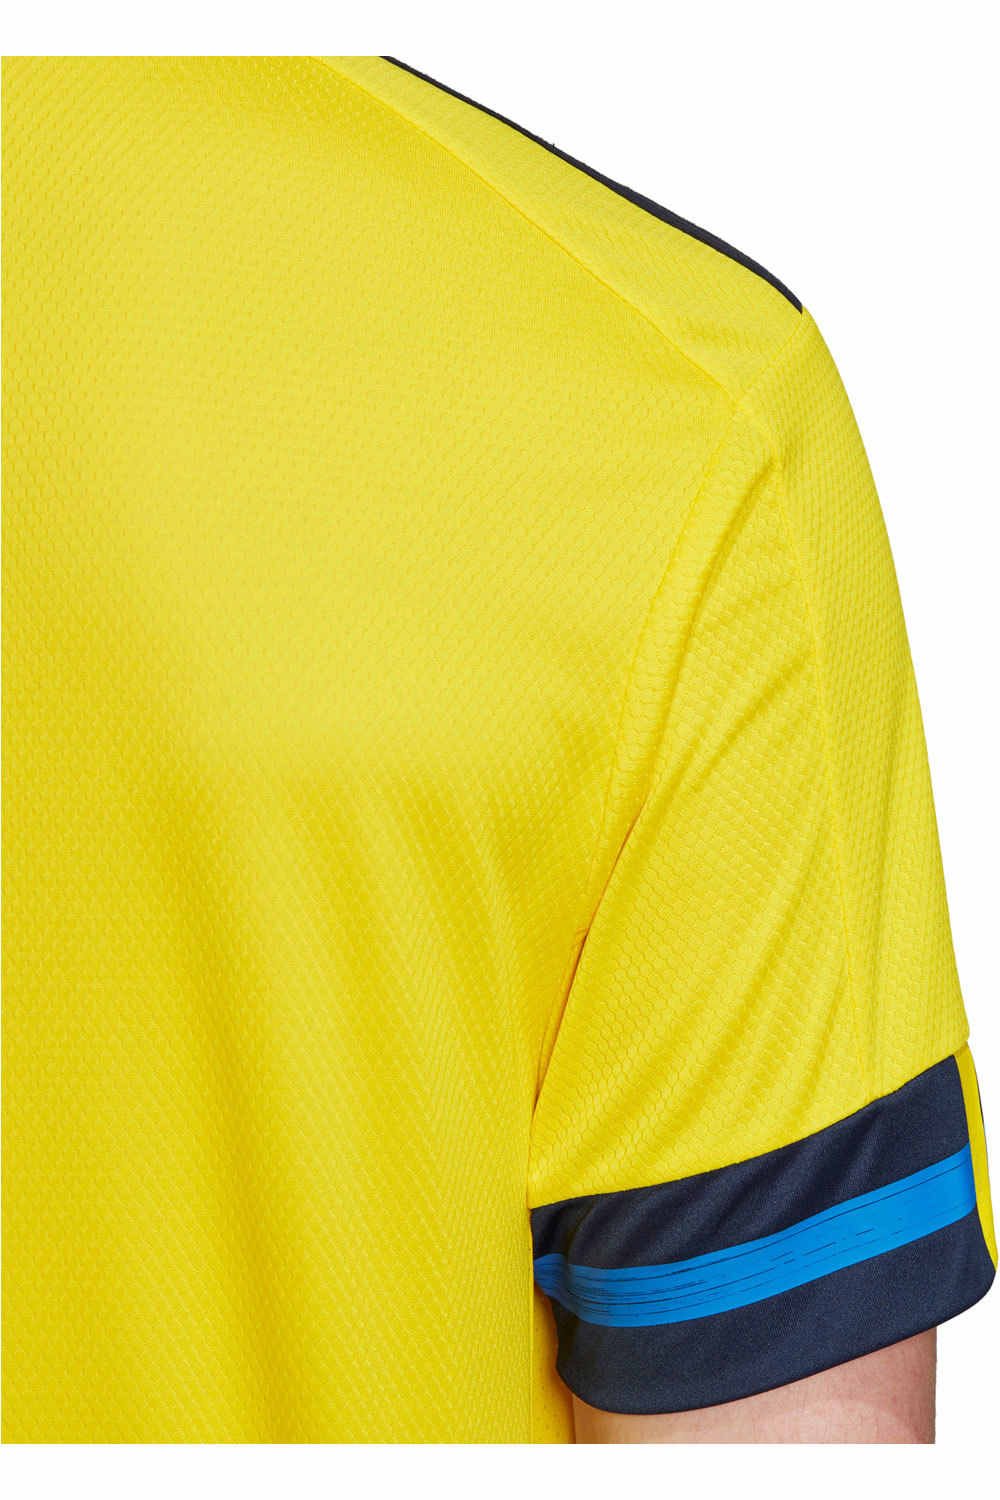 adidas camiseta de fútbol oficiales CAMISETA SUECIA PRIMERA EQUIPACION 2020 03